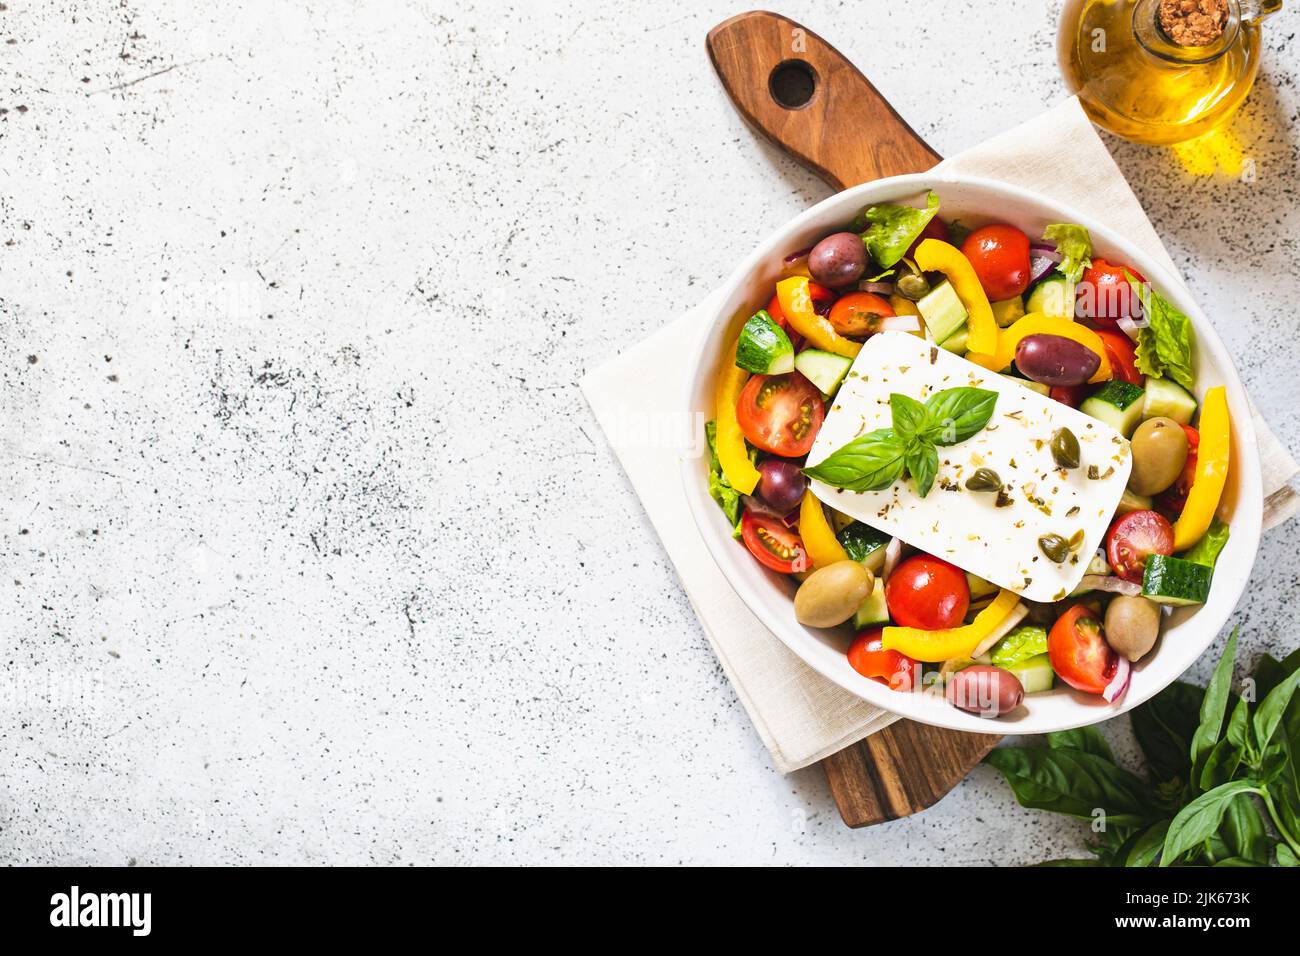 Salade grecque classique de concombre frais, tomate, poivron, laitue, oignon rouge, fromage feta et olives à l'huile d'olive. Banque D'Images